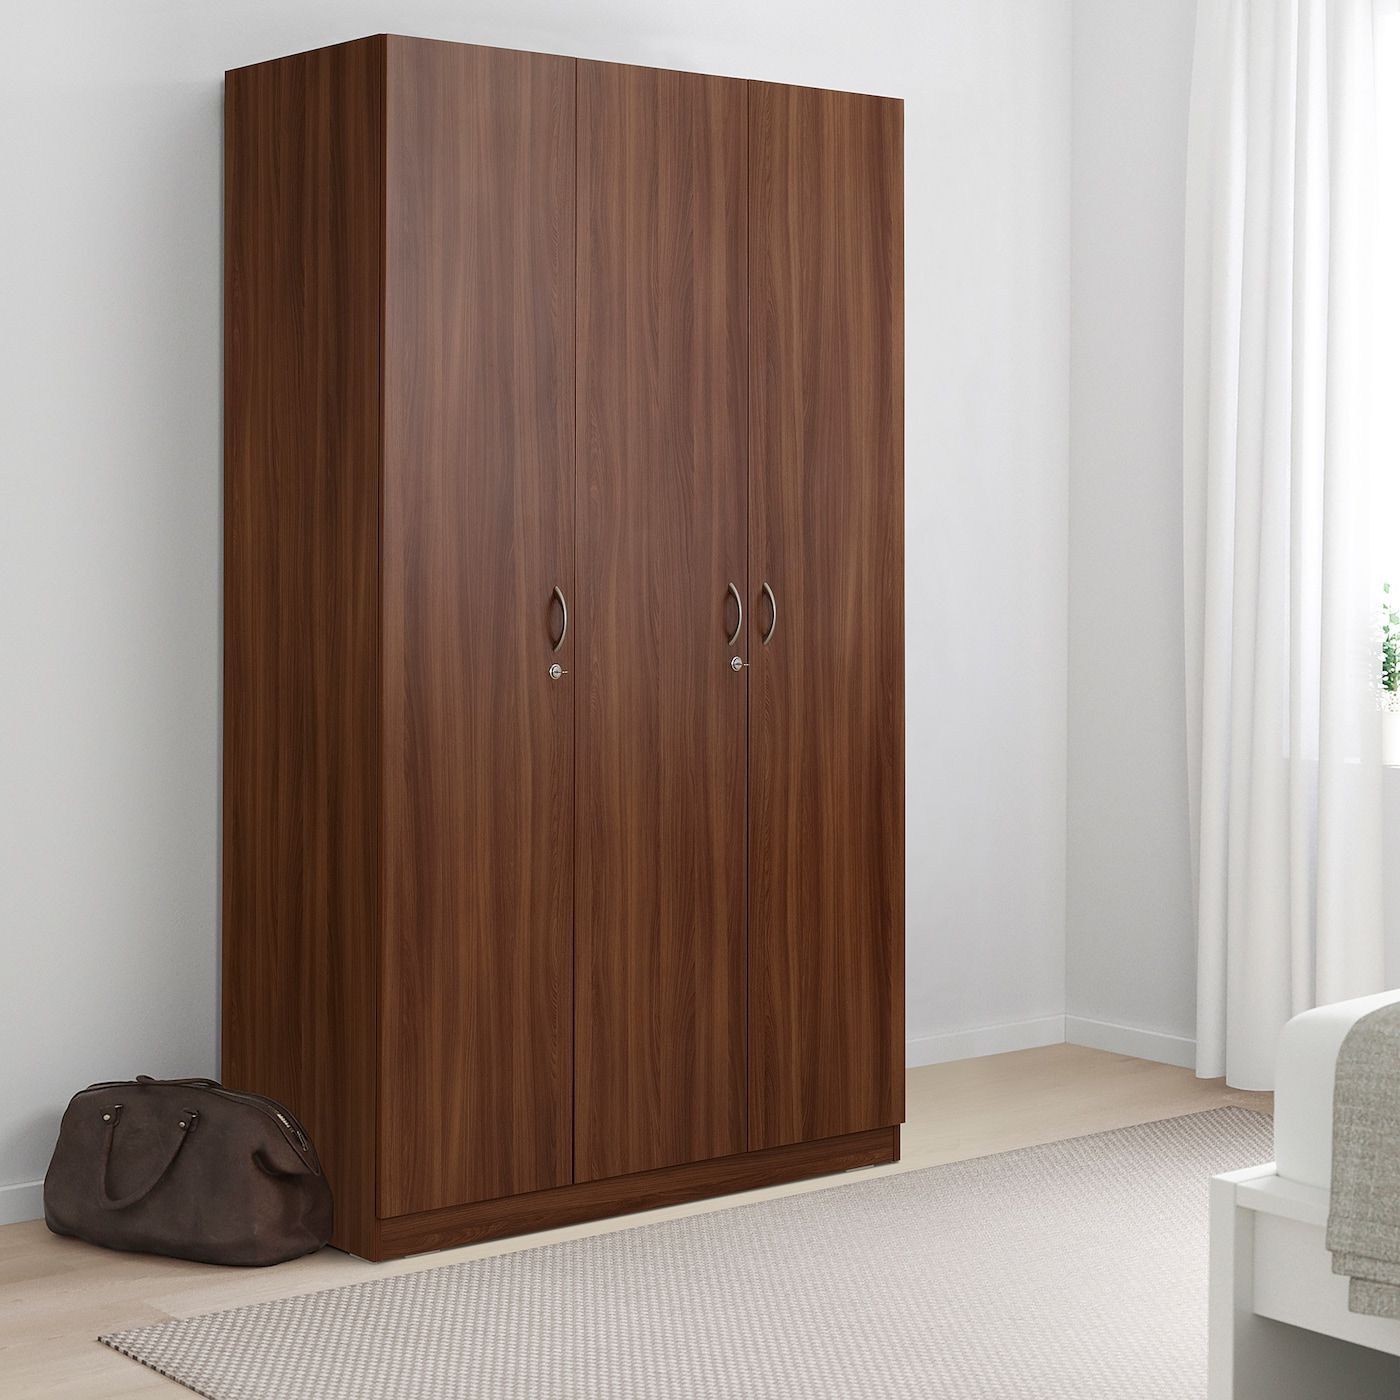 Nodeland Wardrobe With 3 Doors, Medium Brown, 120x52x202 Cm  (471/4x203/8x791/2") – Ikea For Cheap 3 Door Wardrobes (Gallery 8 of 20)